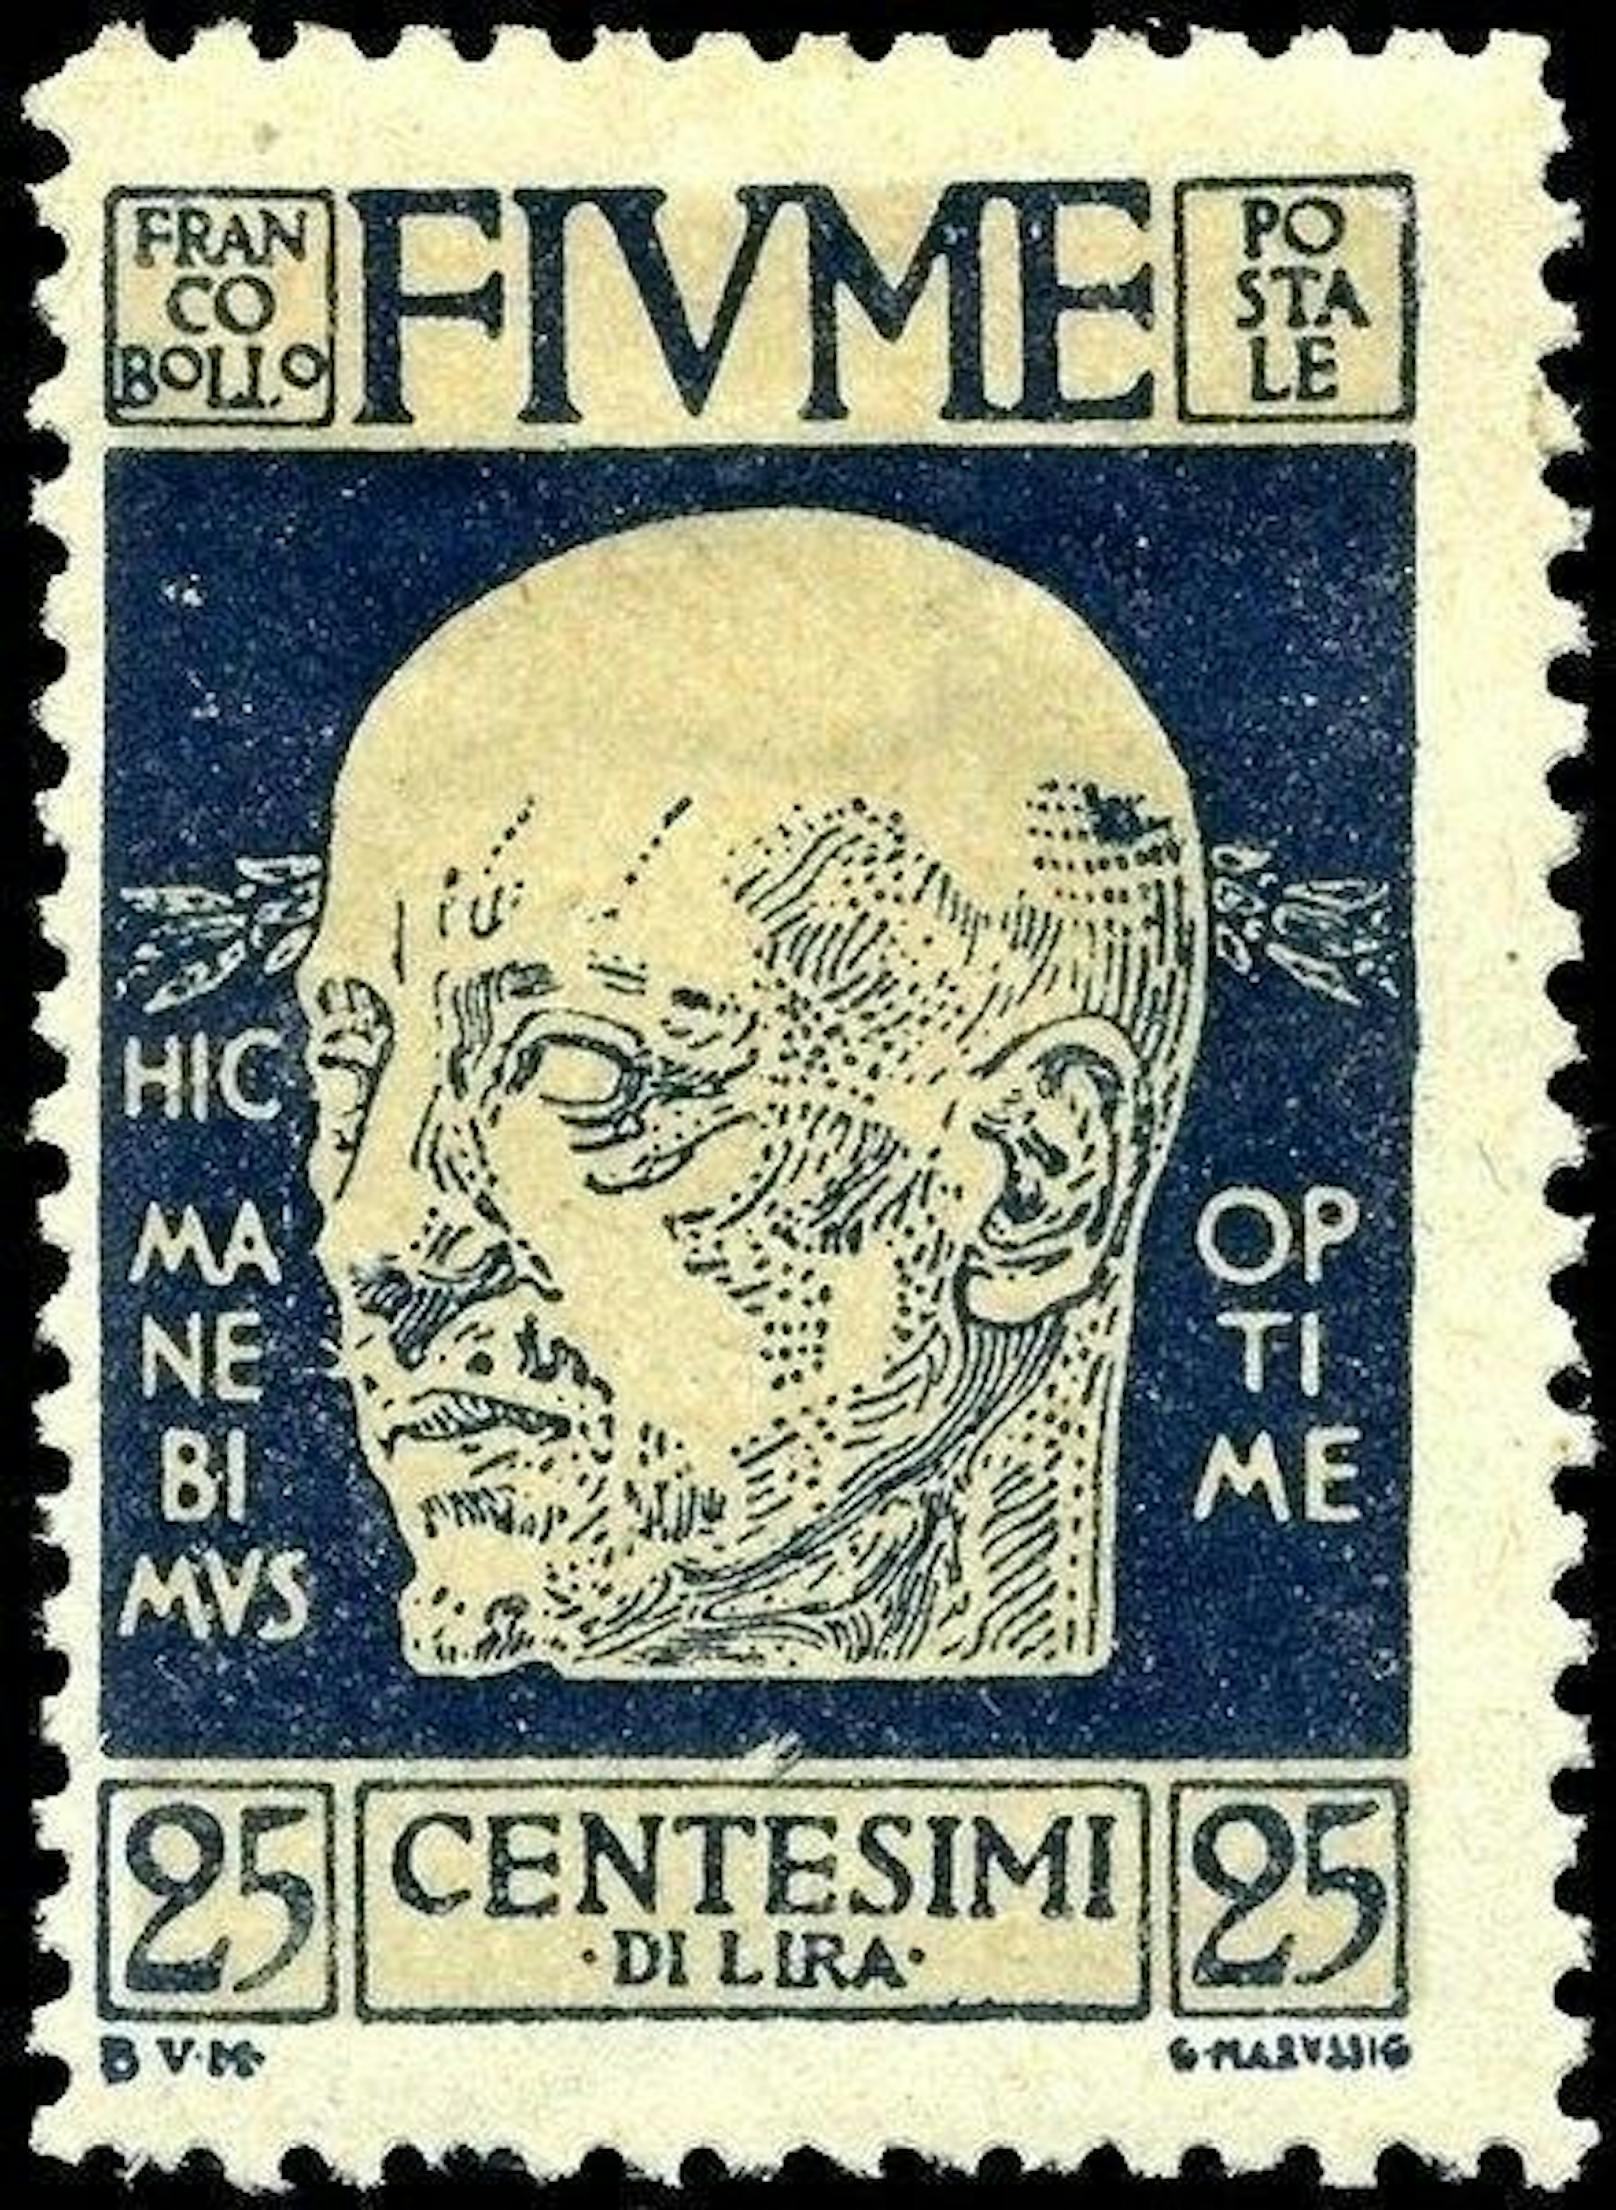 1919 marschierte er in Fiume (heute Rijeka an der kroatischen Adria) ein. Dort herrschte er, bis ihn die italienische Regierung im Dezember 1920 vertrieb. Während dieser Zeit ließ er sogar eigene Briefmarken drucken.